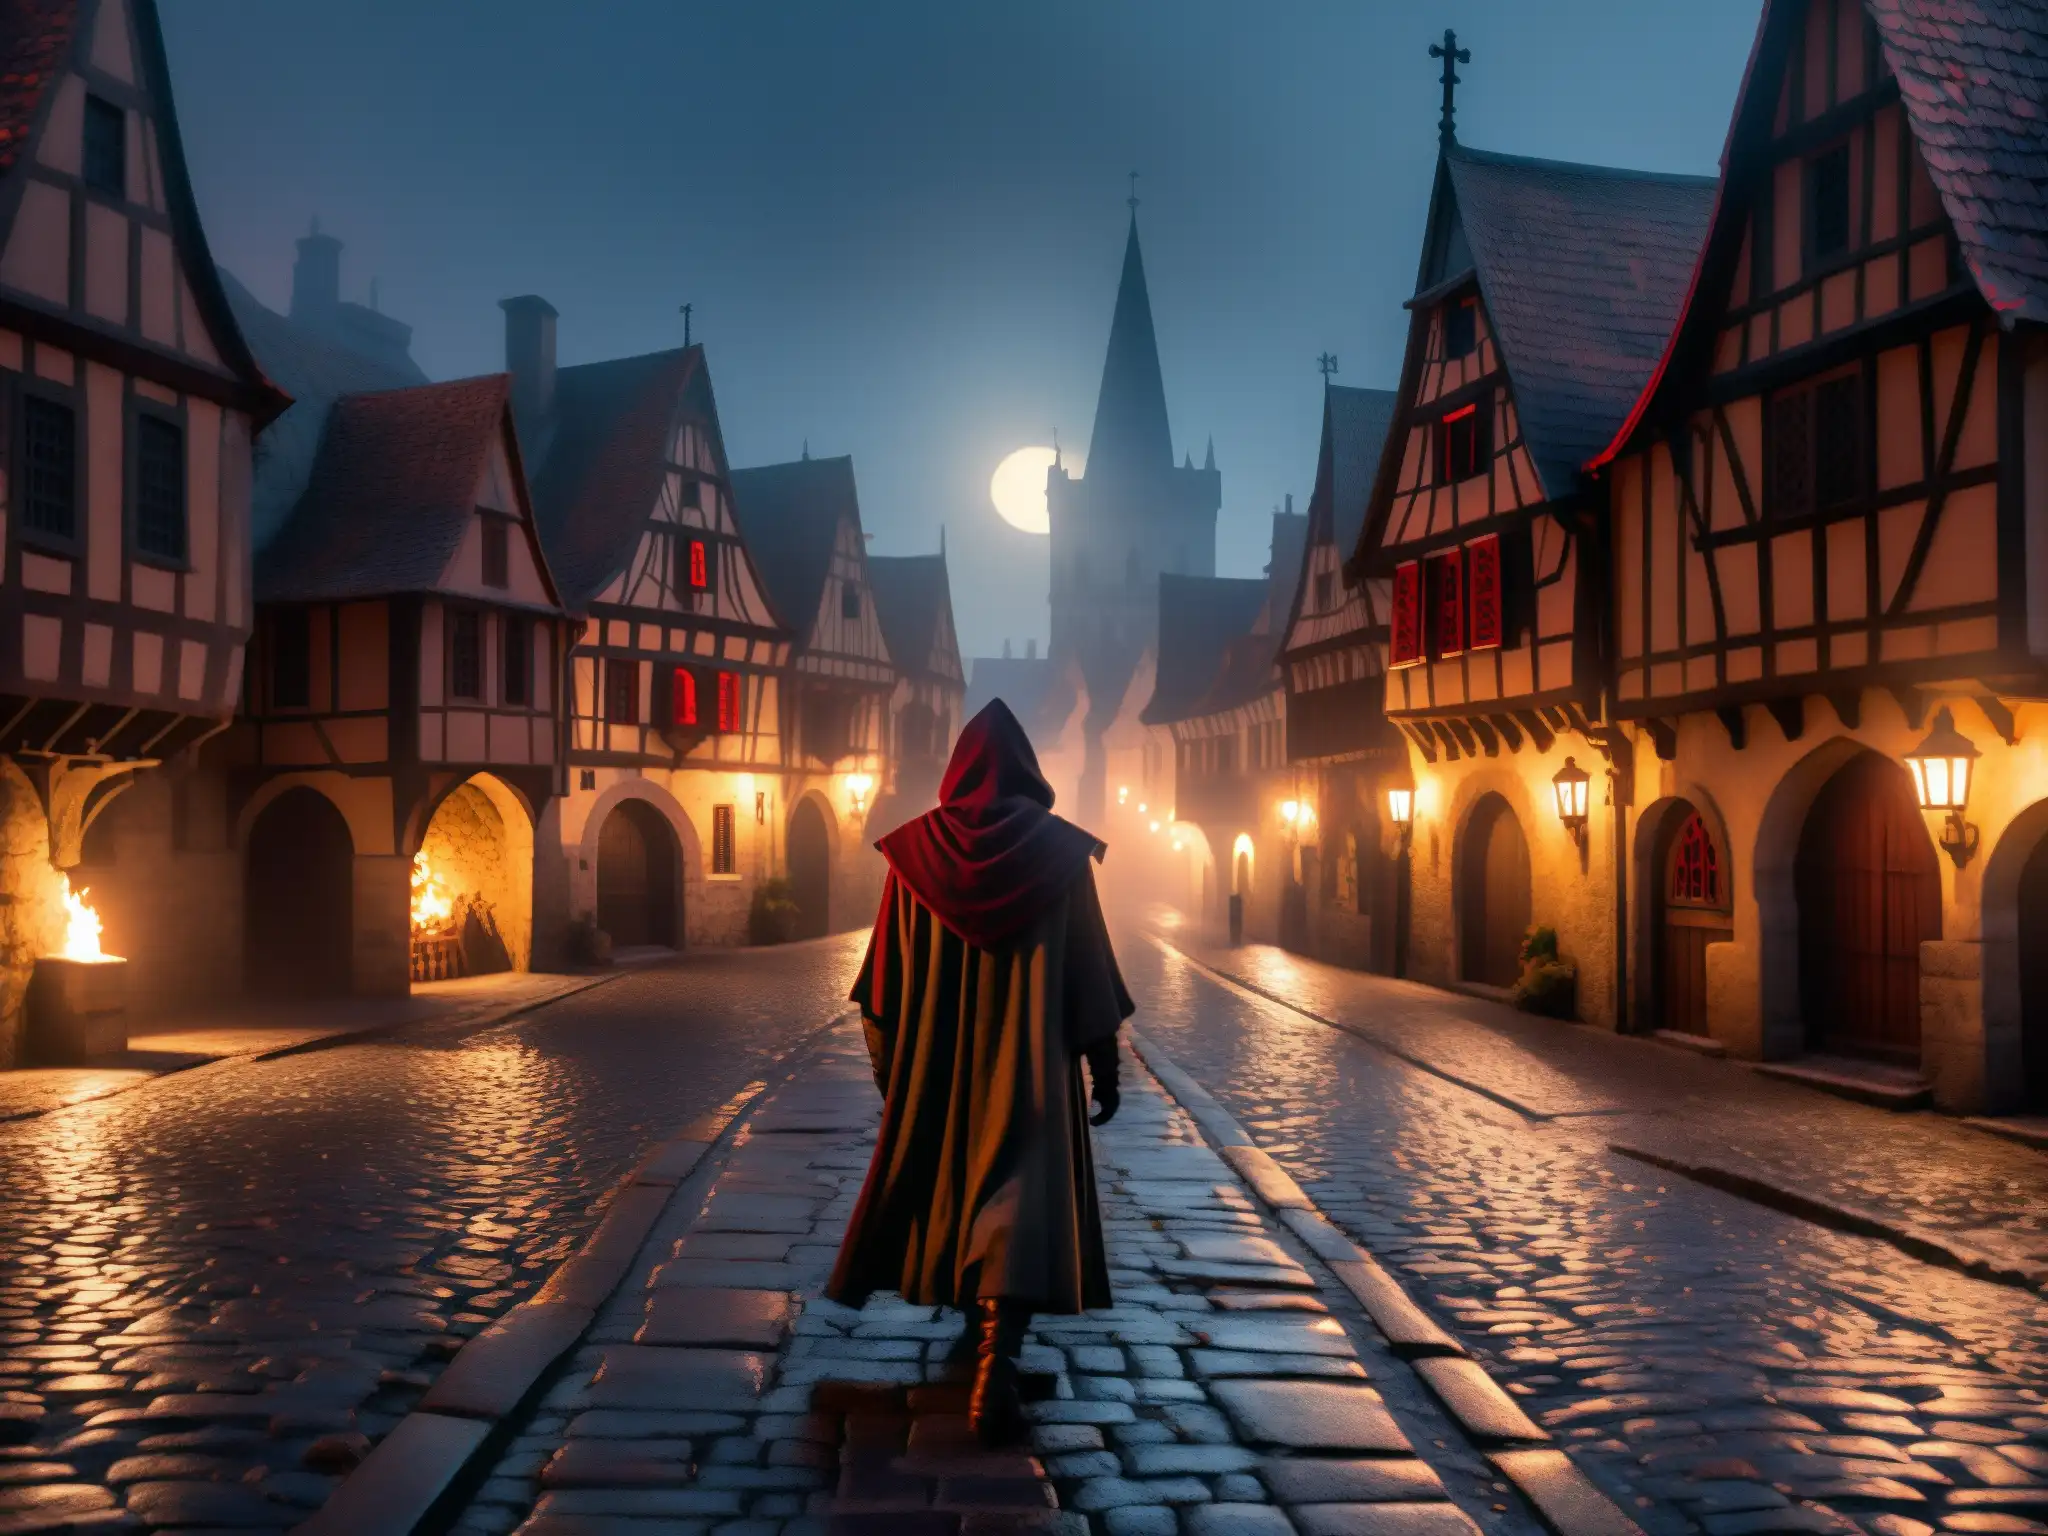 Detallada ilustración de una ciudad europea medieval de noche, iluminada por antorchas y luna